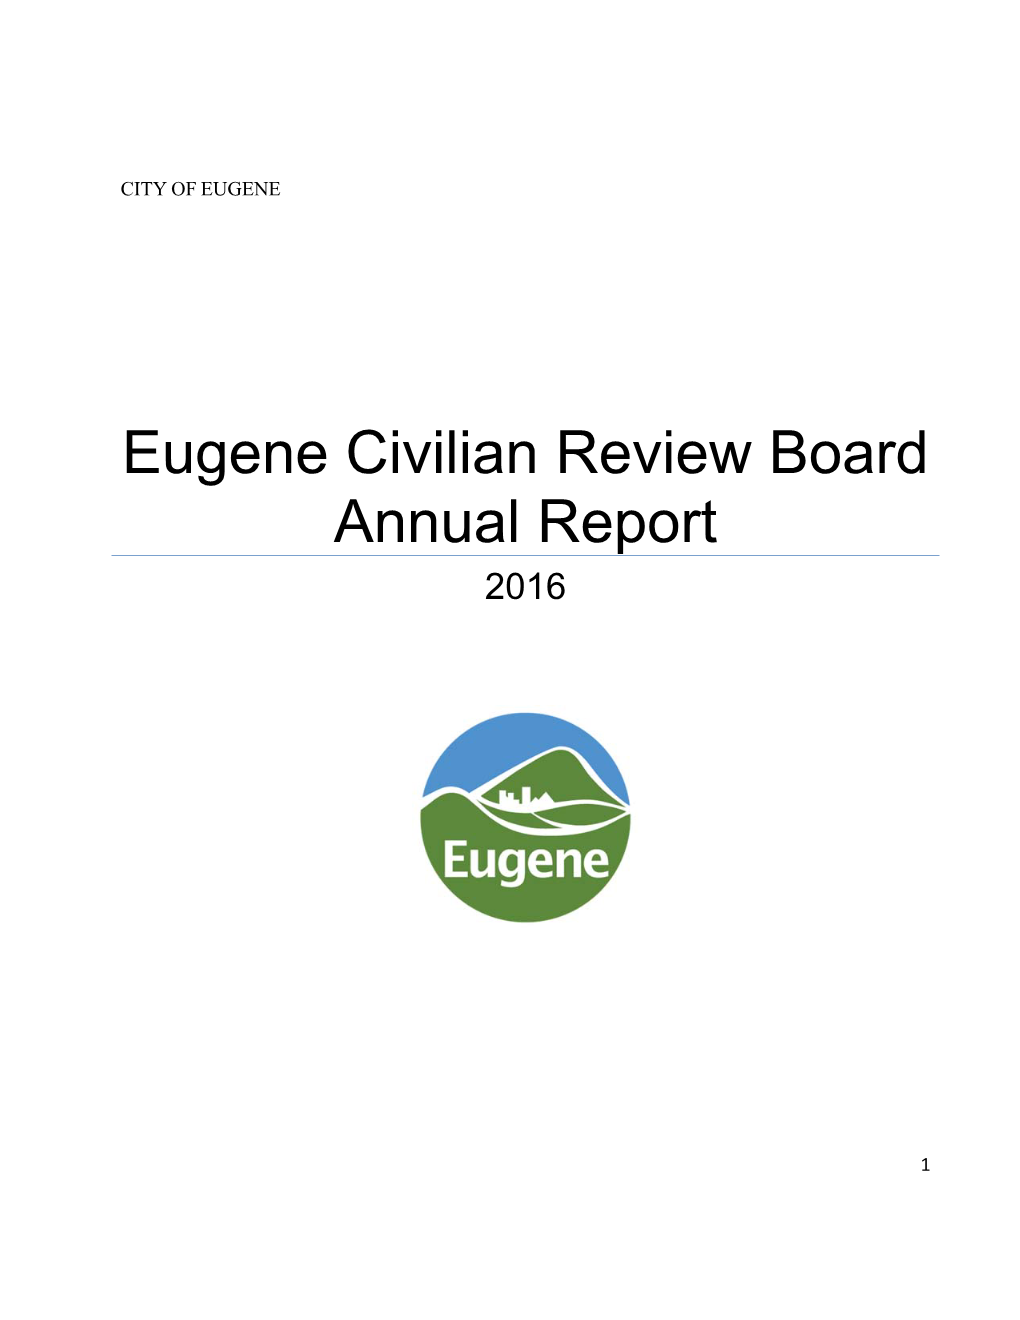 Civilian Review Board Annual Report 2016